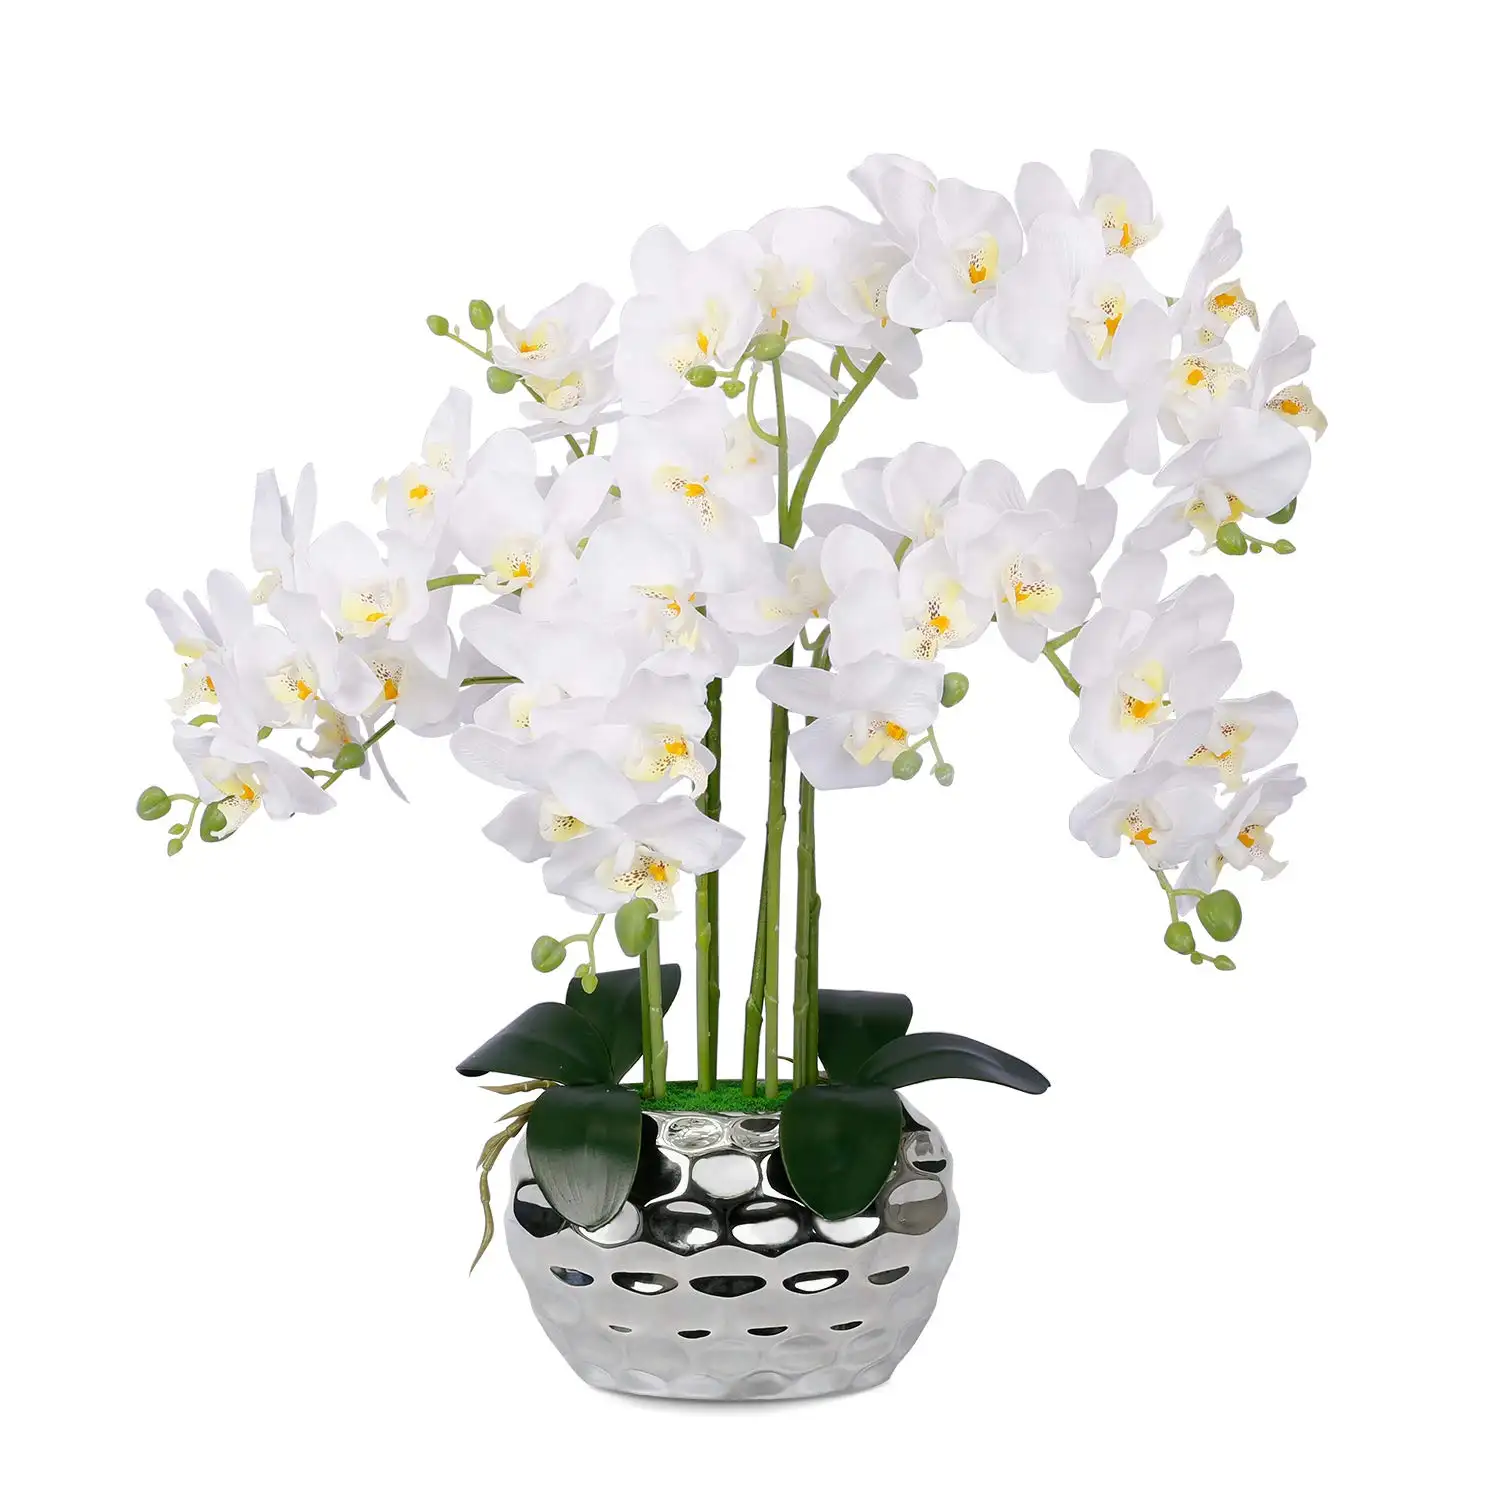 인공 난초 실버 꽃병 인공 꽃 실크 난초 가짜 식물 Phalaenopsis 홈 장식 주방 장식